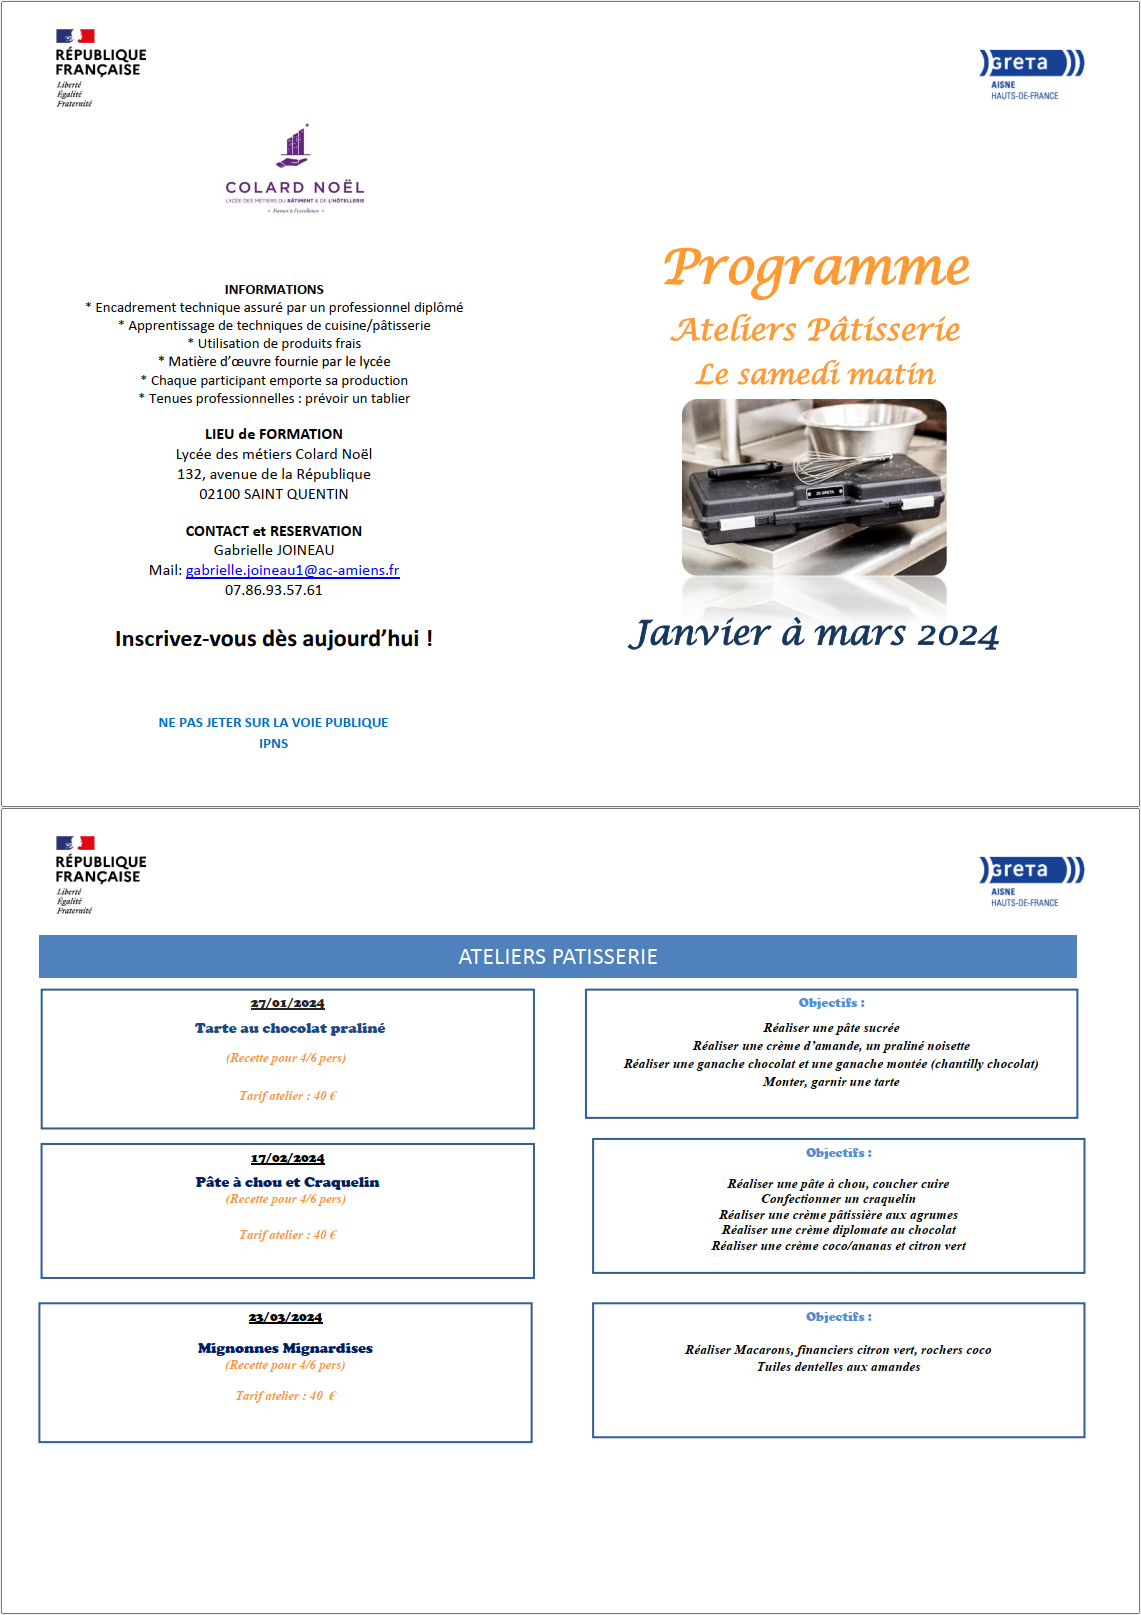 Atelier culinaire du GRETA Aisne Janvier à Mars 2023